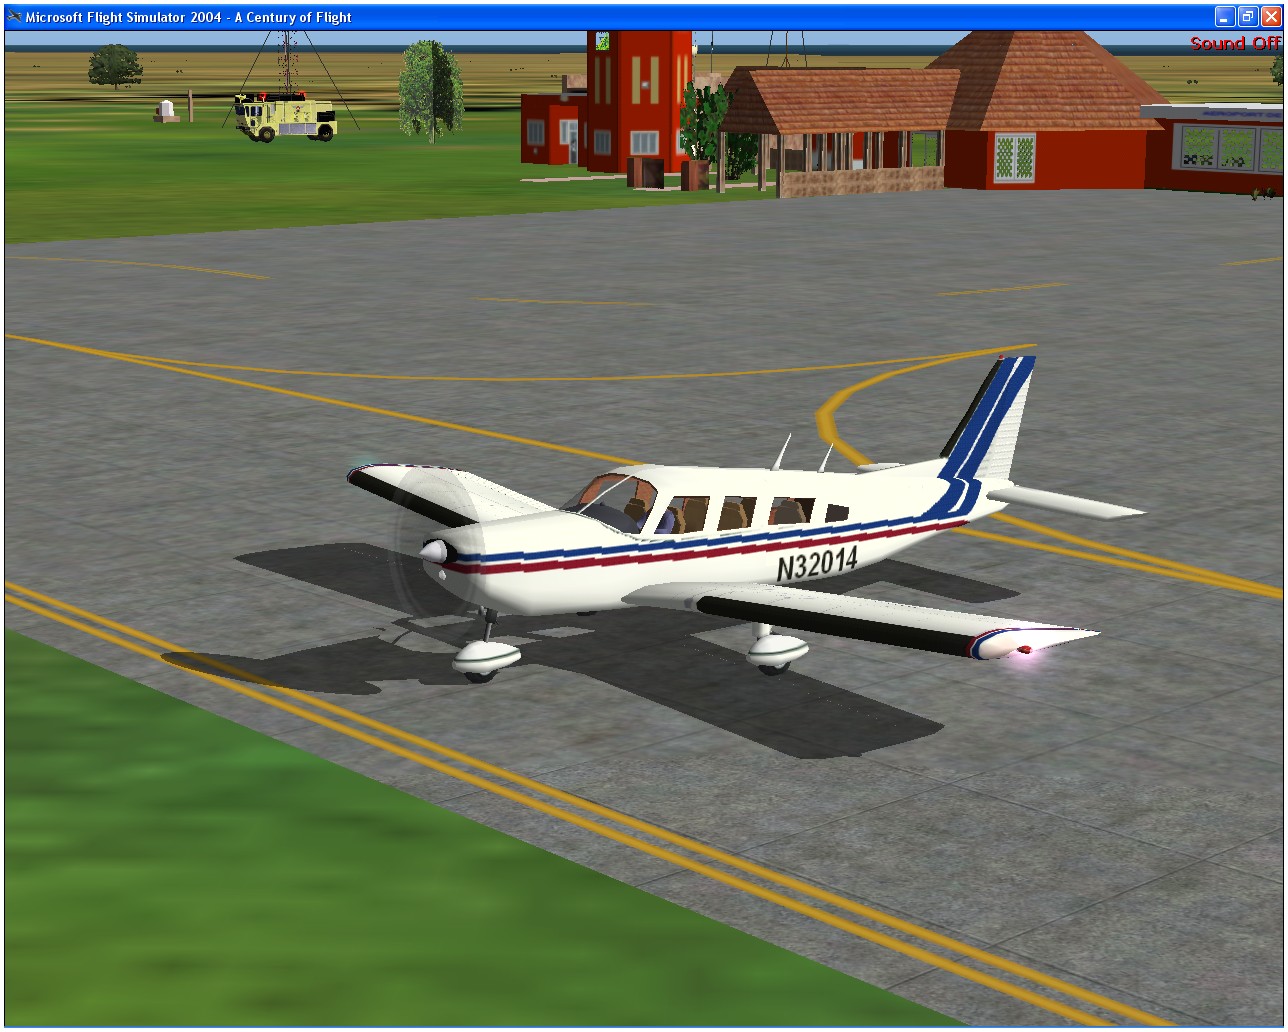 Voici l'avion Aerotaxi